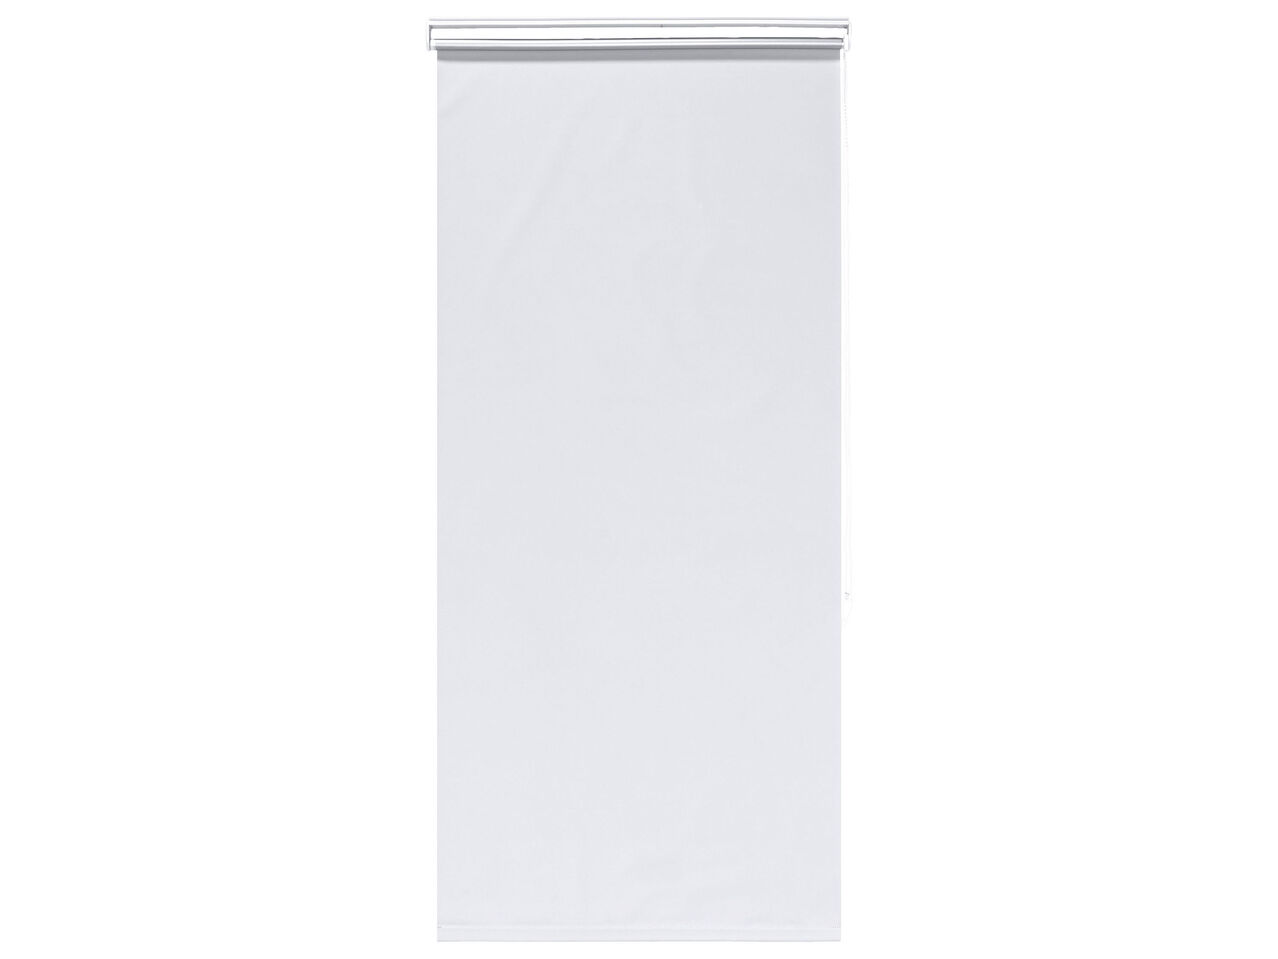 Roleta drzwiowa lub okienna , cena 29 PLN 
 
- do wyboru rozmiary: 60 x 150 cm, ...